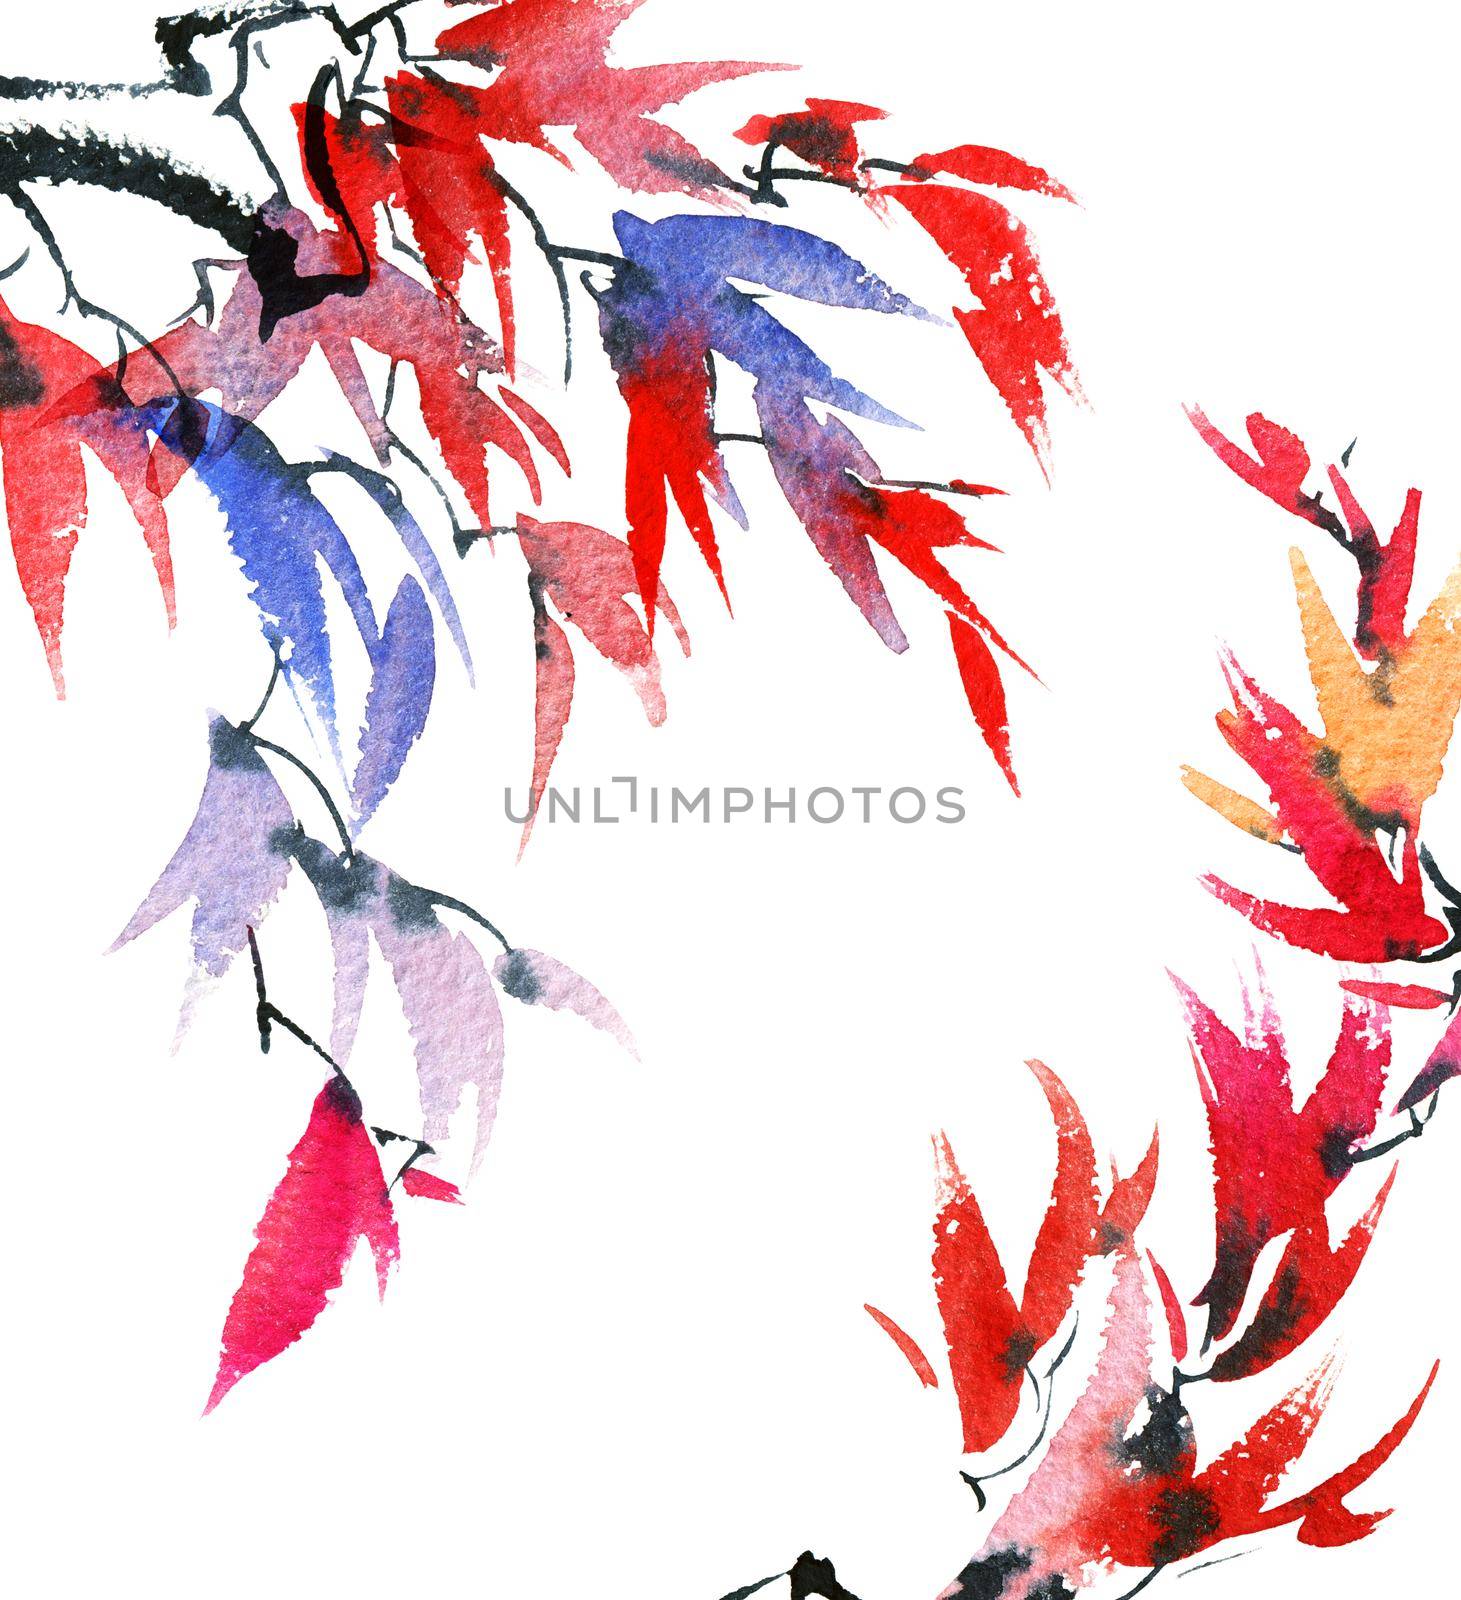 Tree brunch with leaves by Olatarakanova